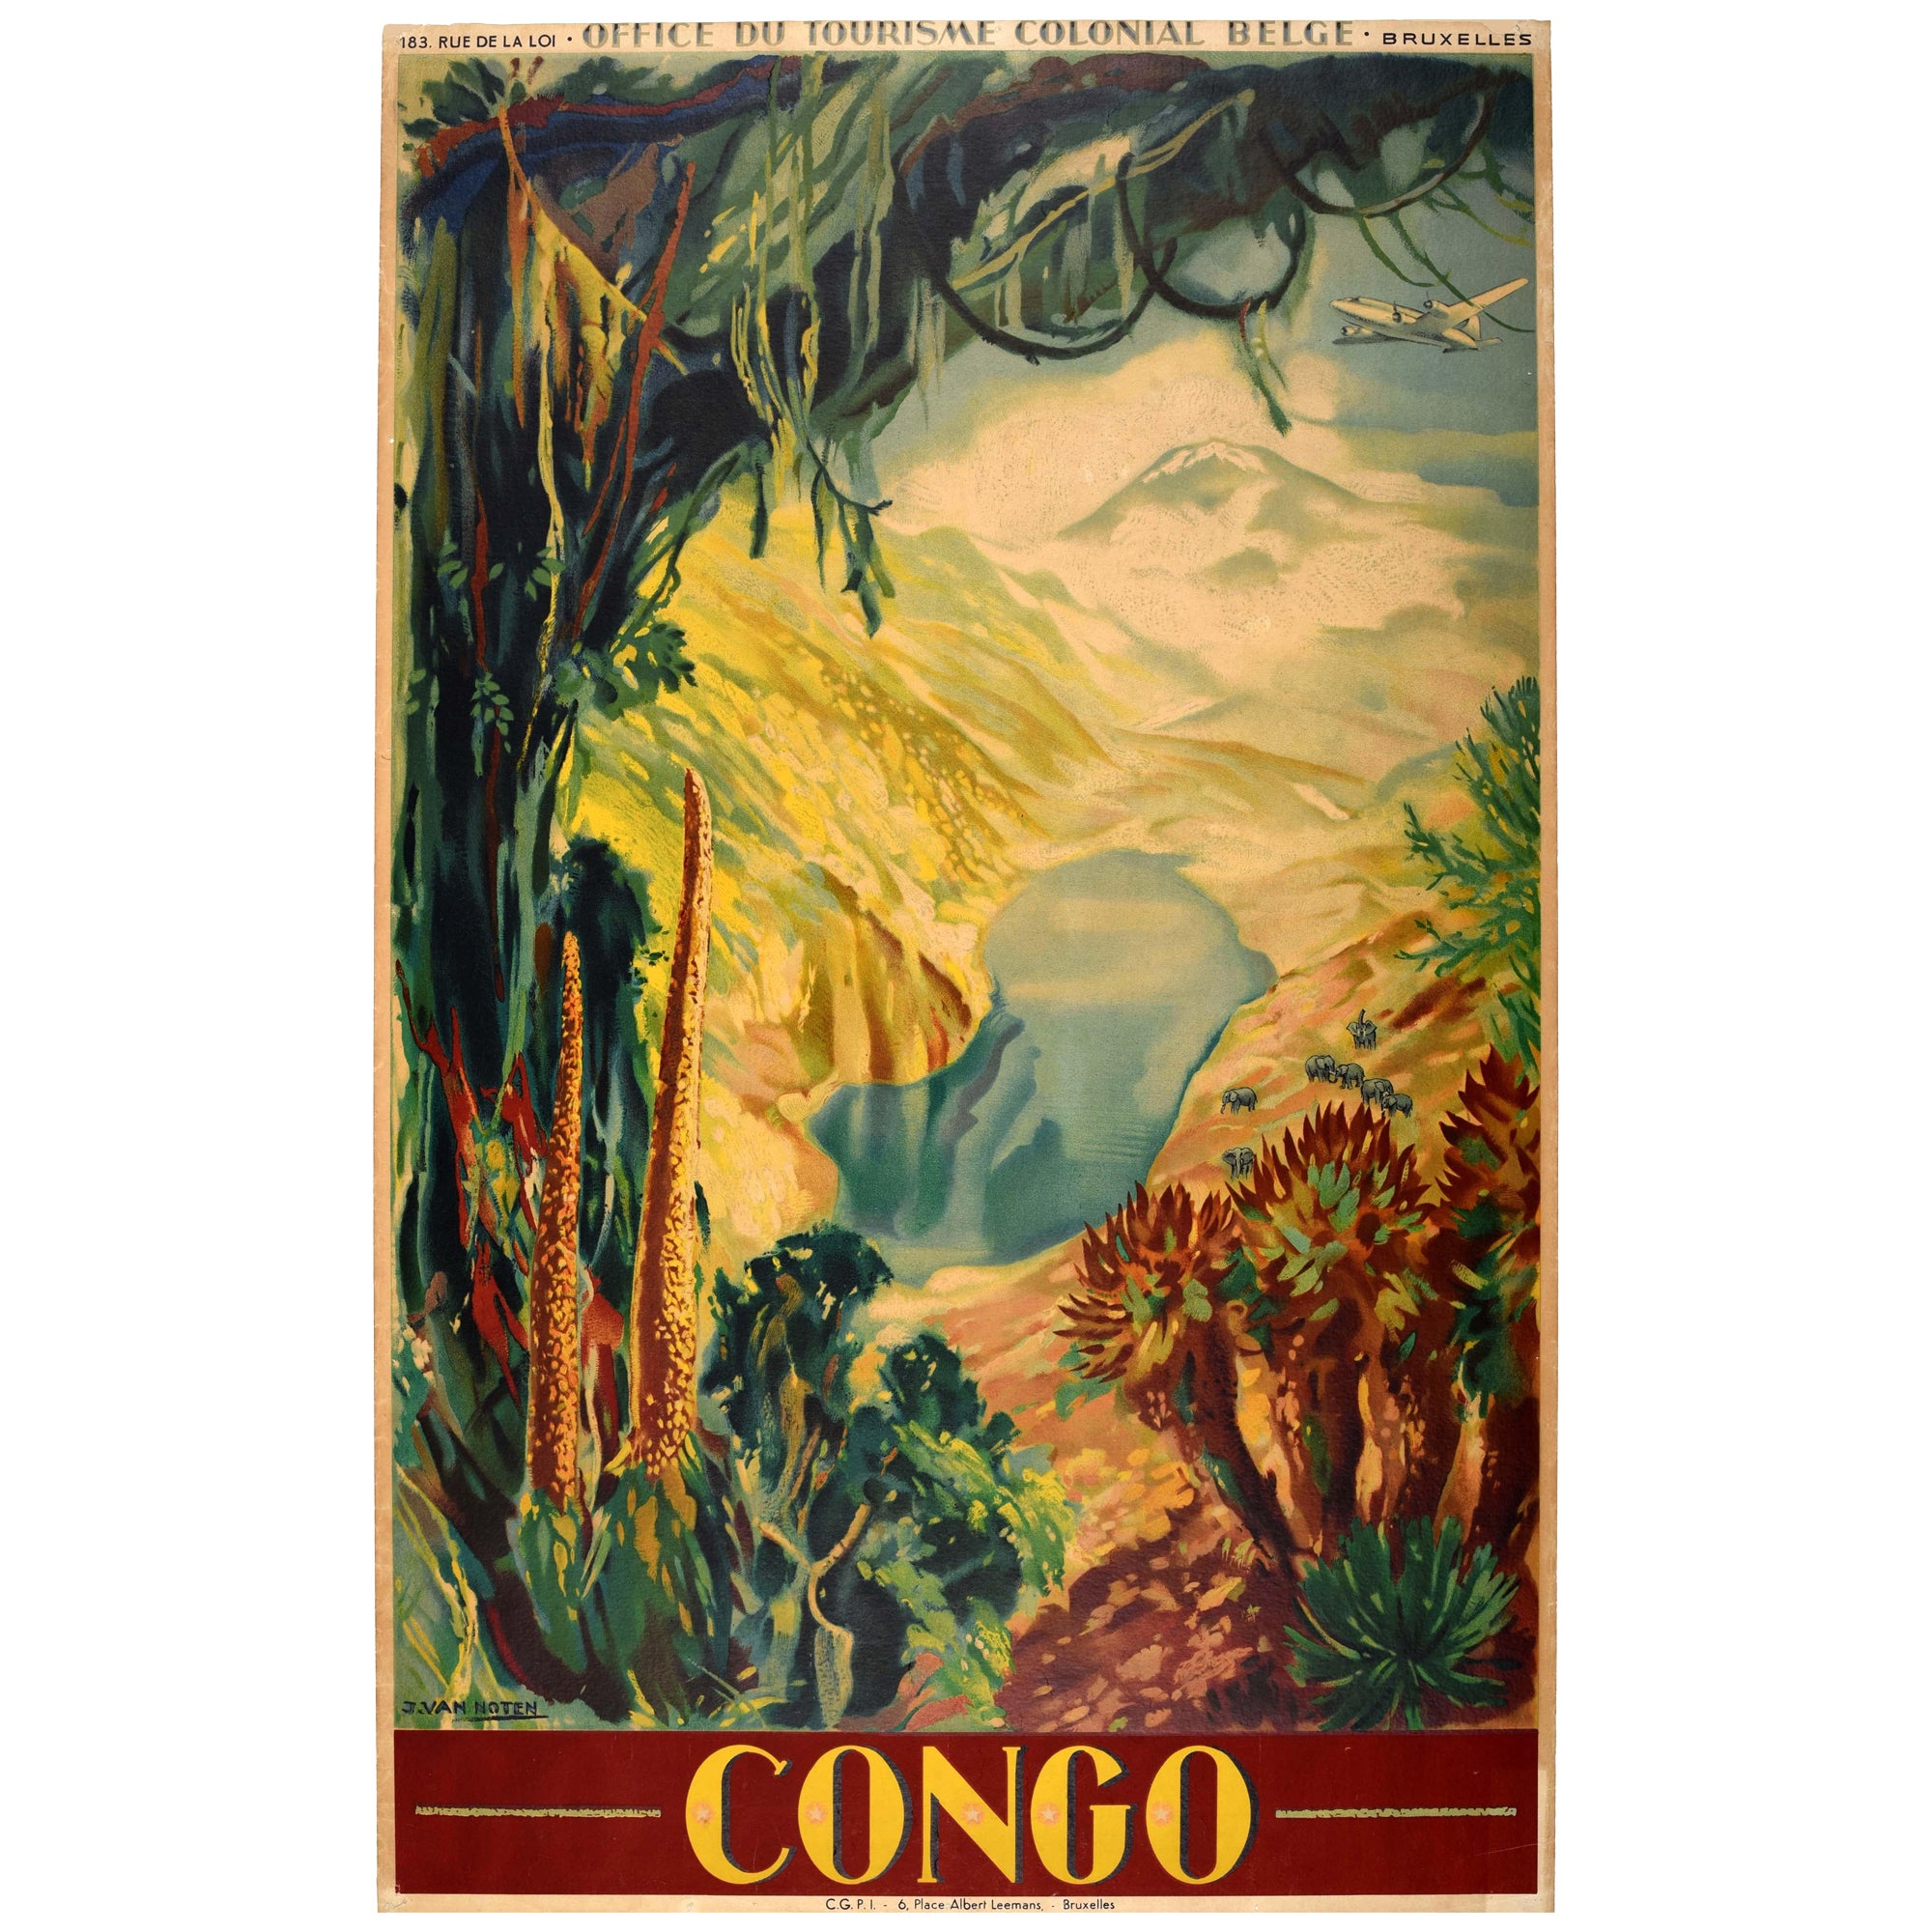 Affiche de voyage vintage d'Afrique du Congo Leopoldville Kinshasa Zaire